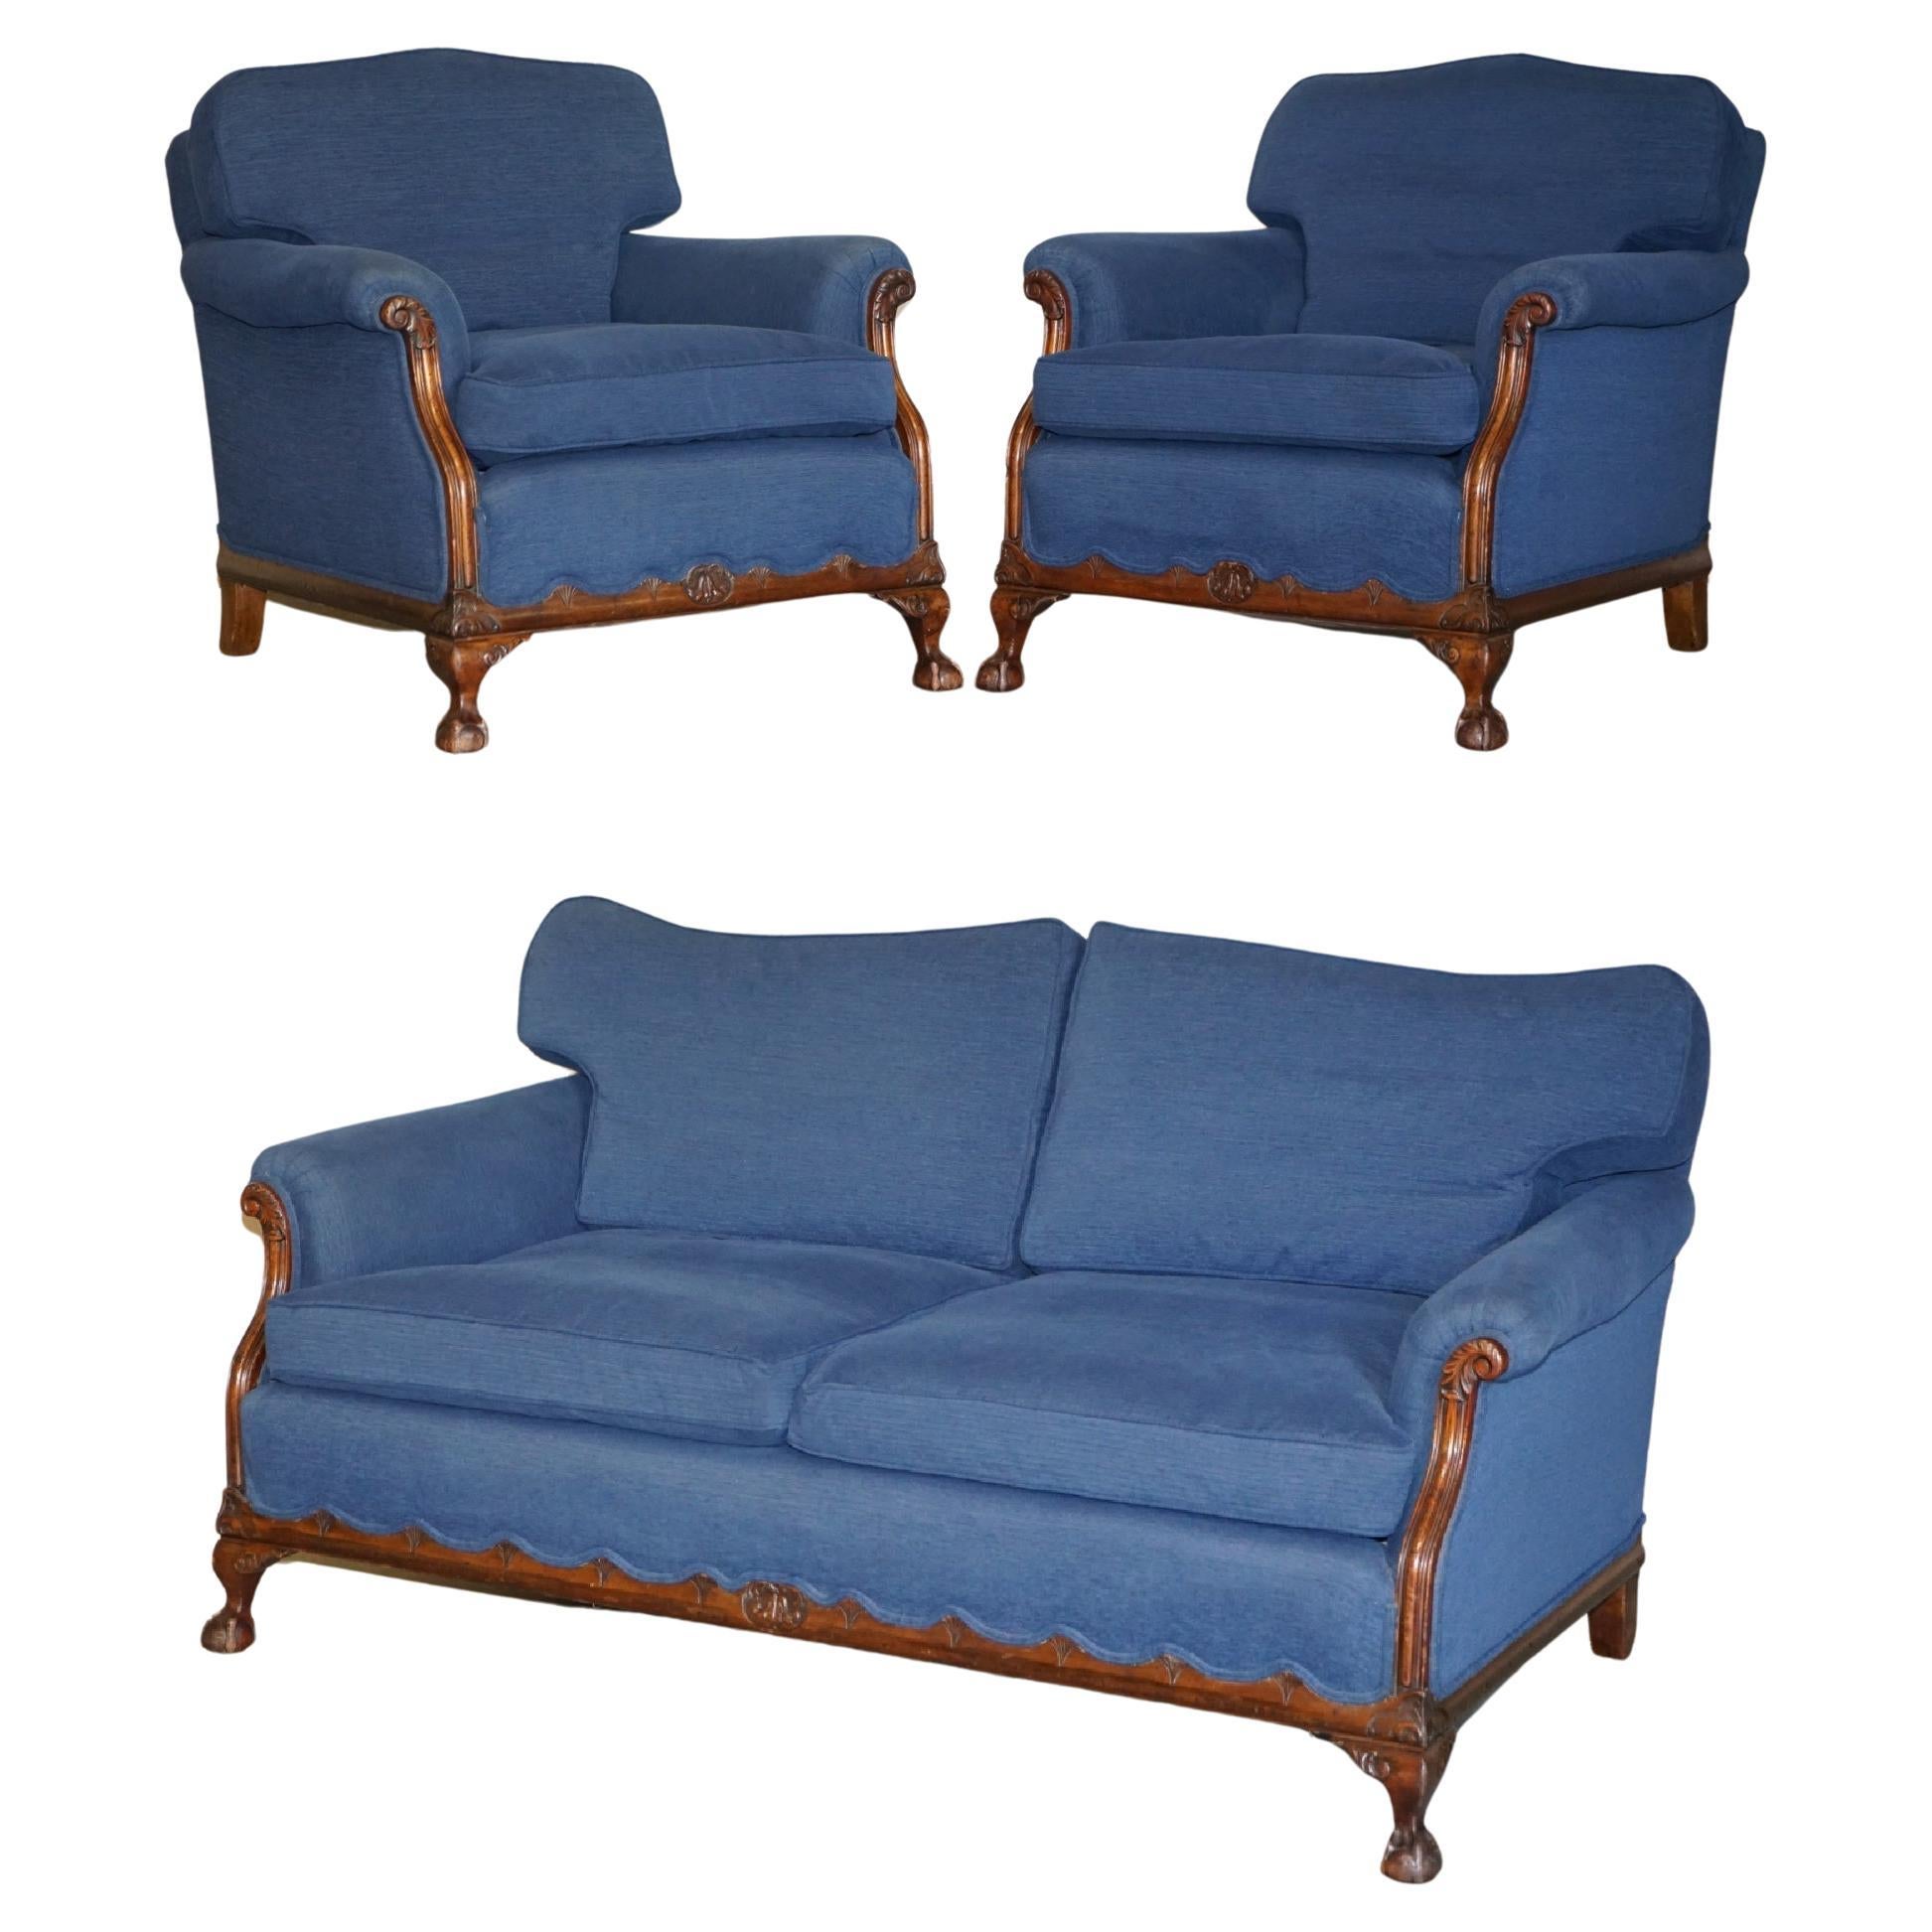 Suite de canapés et fauteuils victoriens en tissu bleu napoléonien avec pieds en griffe et boule